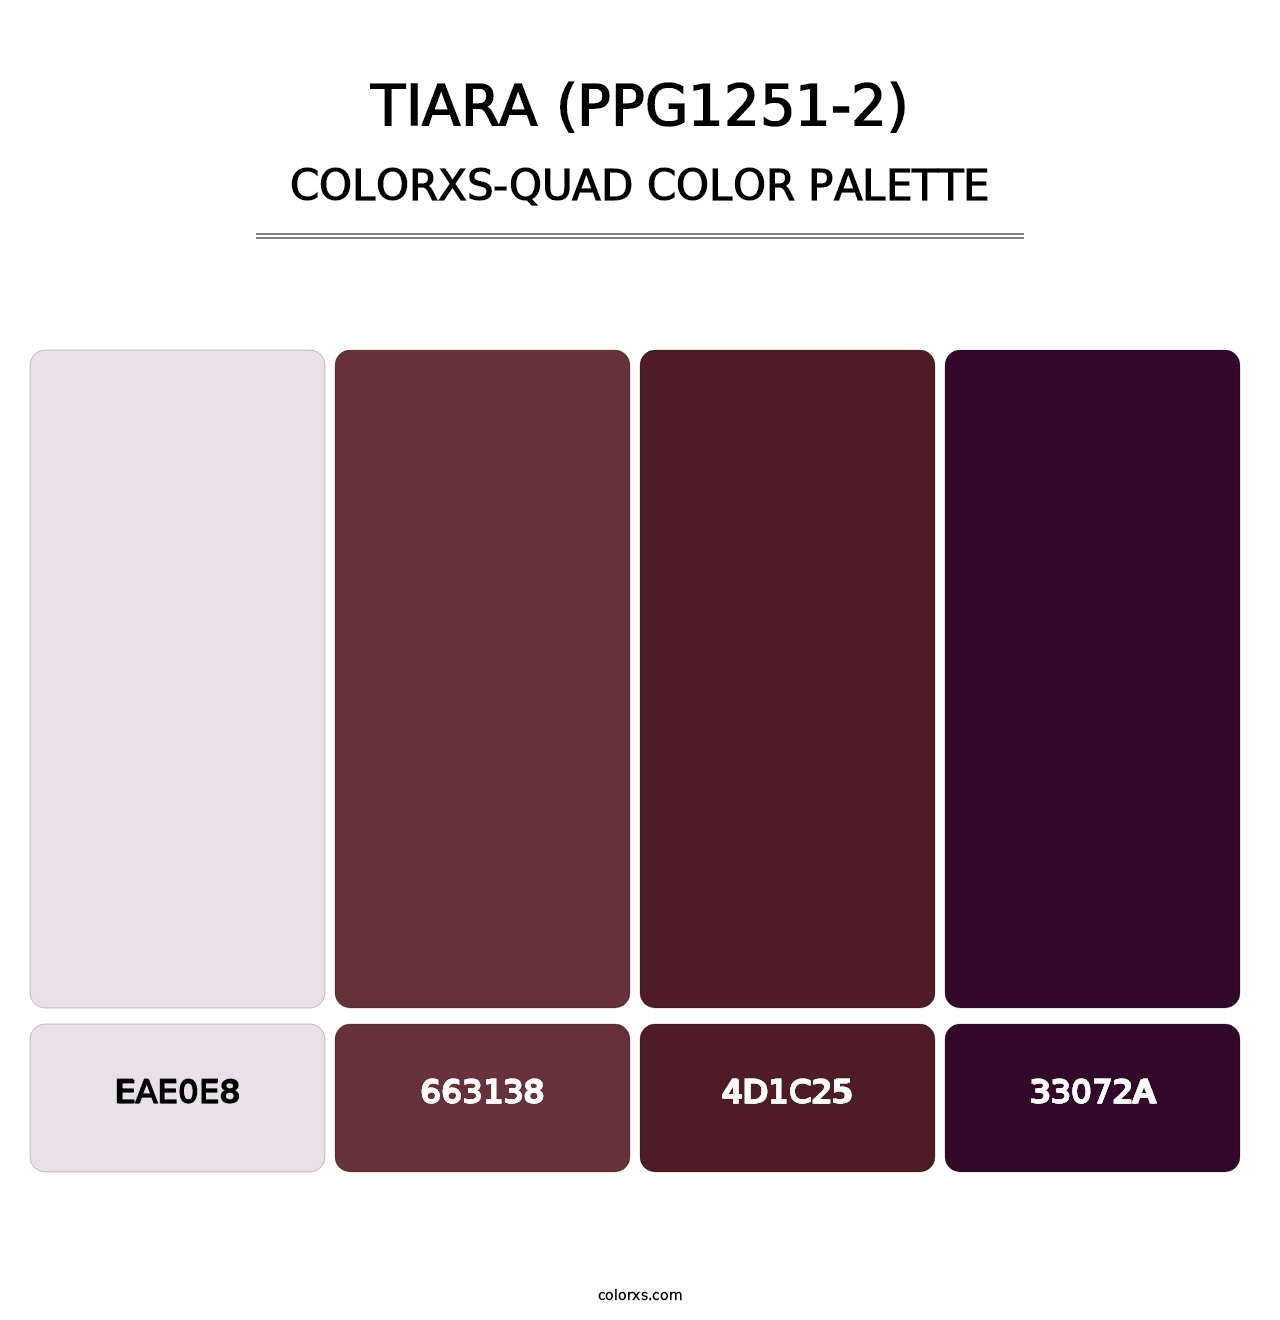 Tiara (PPG1251-2) - Colorxs Quad Palette